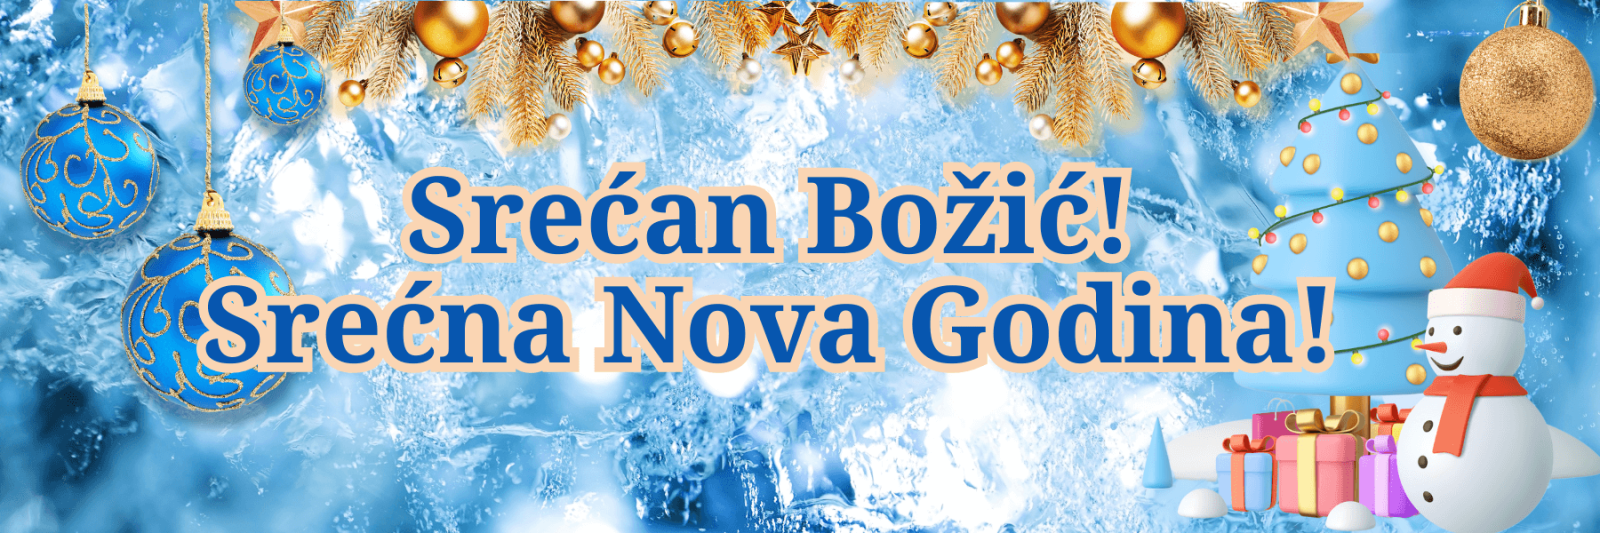 Buon Natale e Felice Anno nuovo! in montenegrino